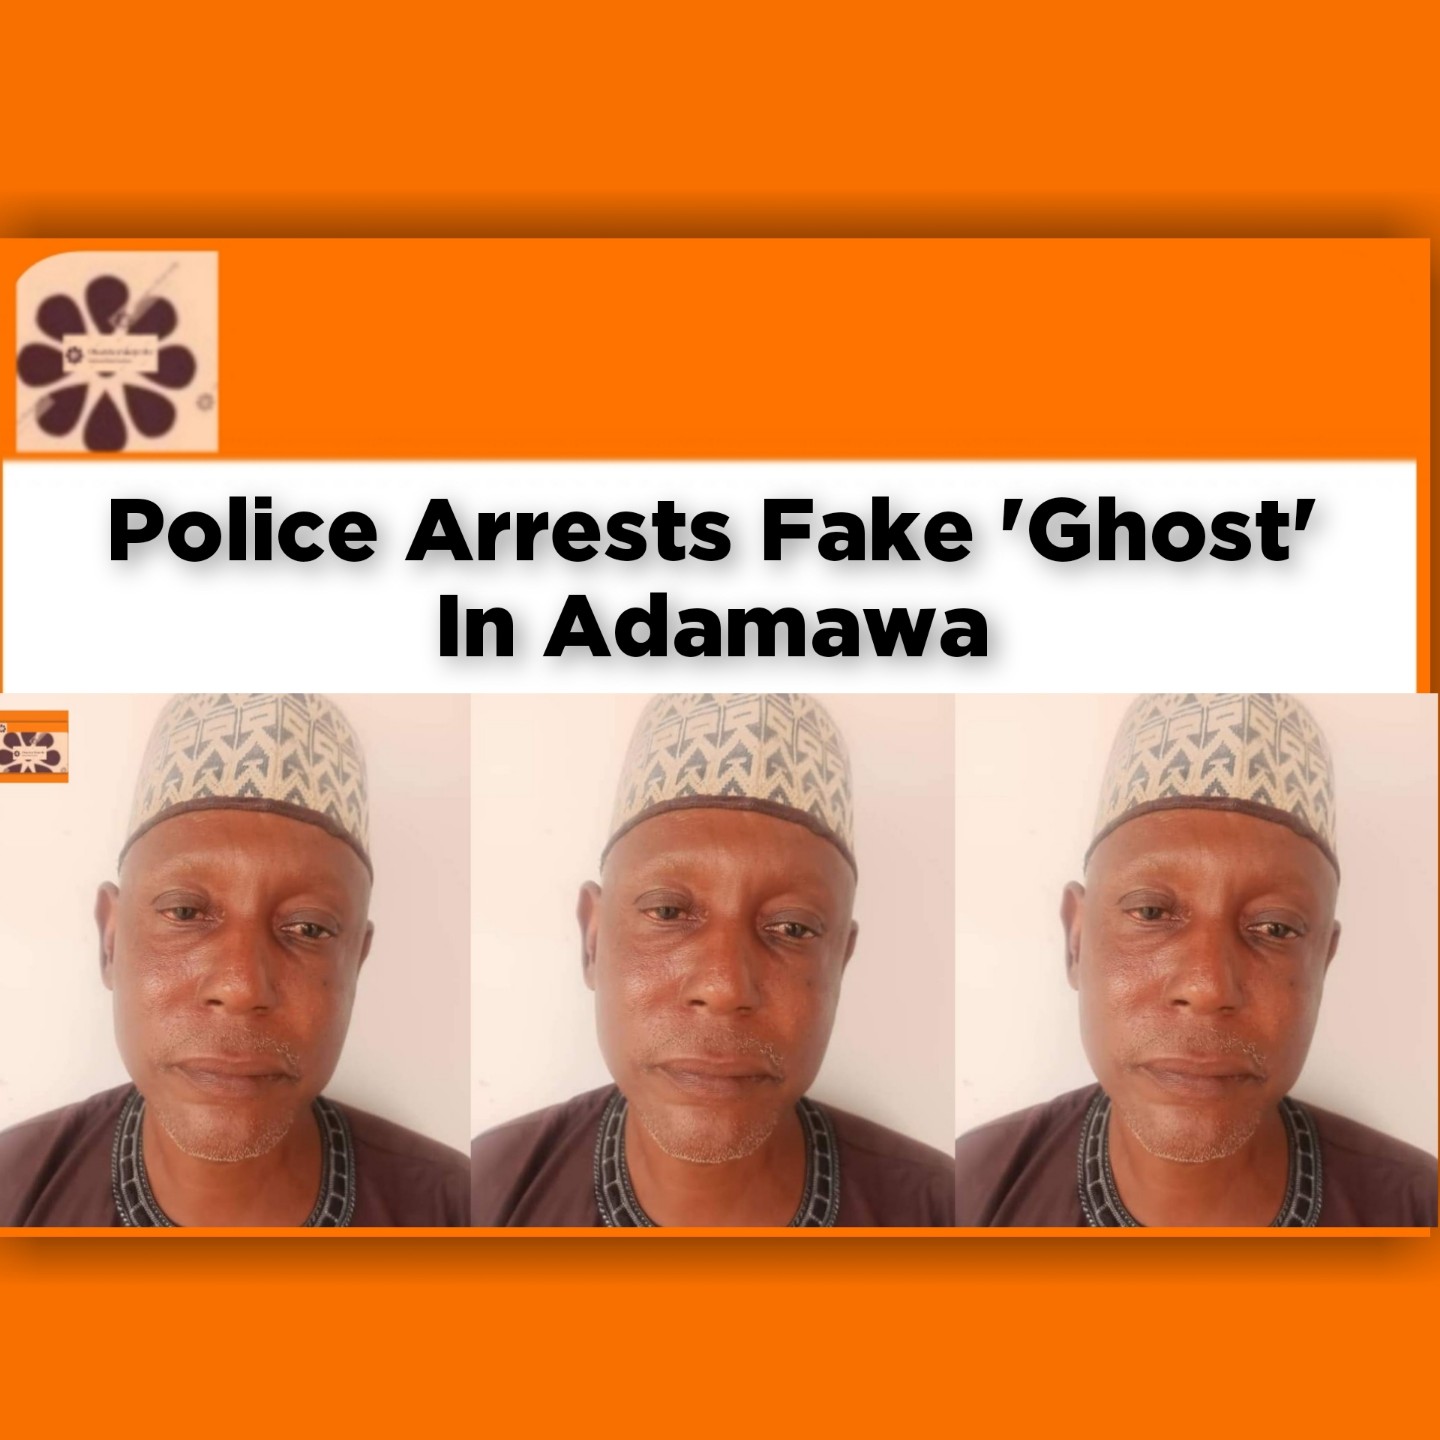 Police Arrests Fake 'Ghost' In Adamawa ~ OsazuwaAkonedo #Abubakar #Adamawa #Fraud #Ghost #Malam #Mohammad #Police #Sabo